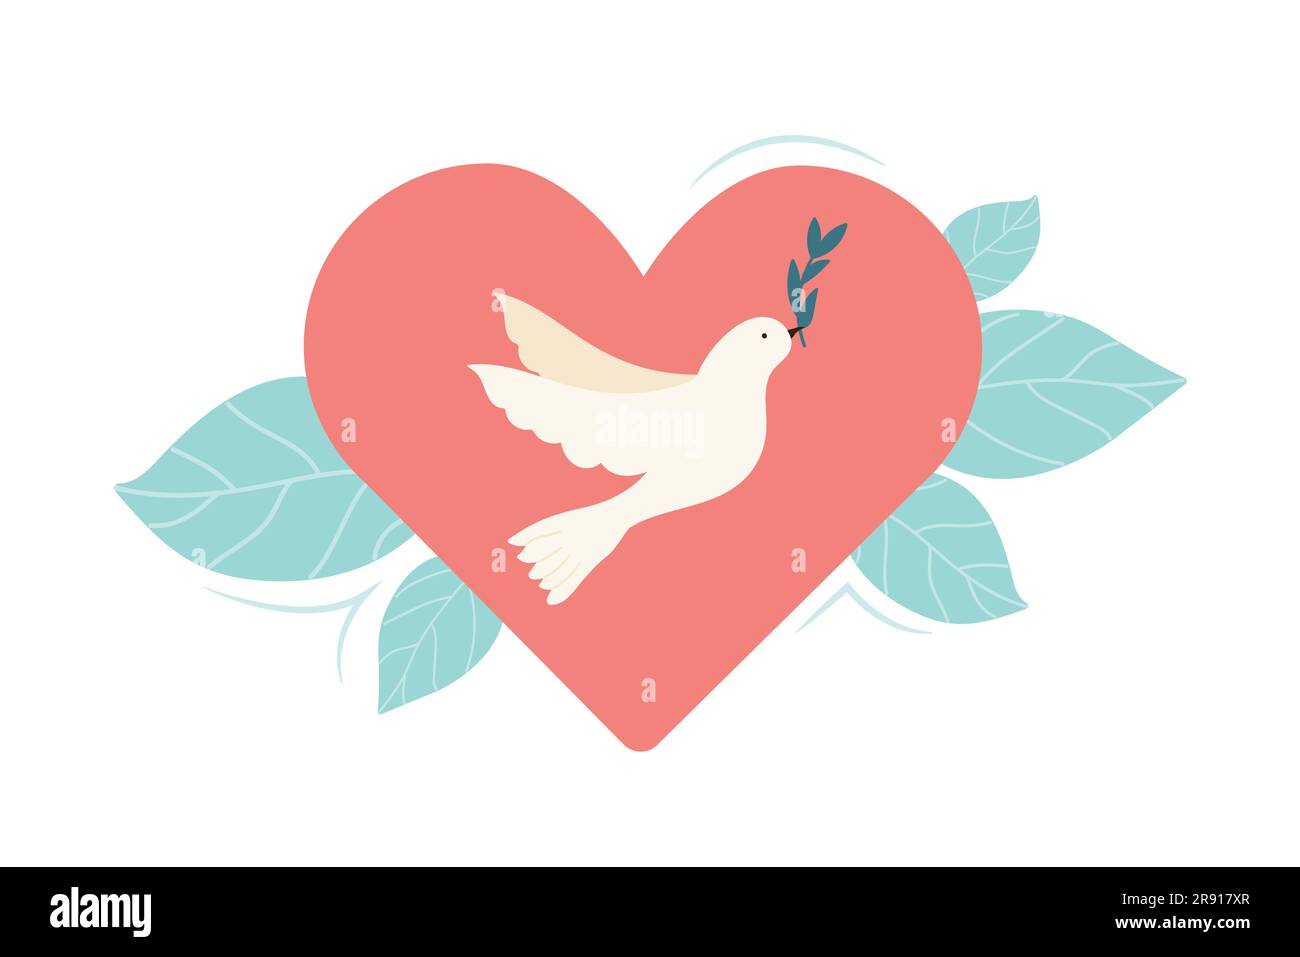 Colomba volante con rametto di ulivo all'interno del cuore. Uccello da cartoni animati, simbolo di pace e libertà Illustrazione Vettoriale